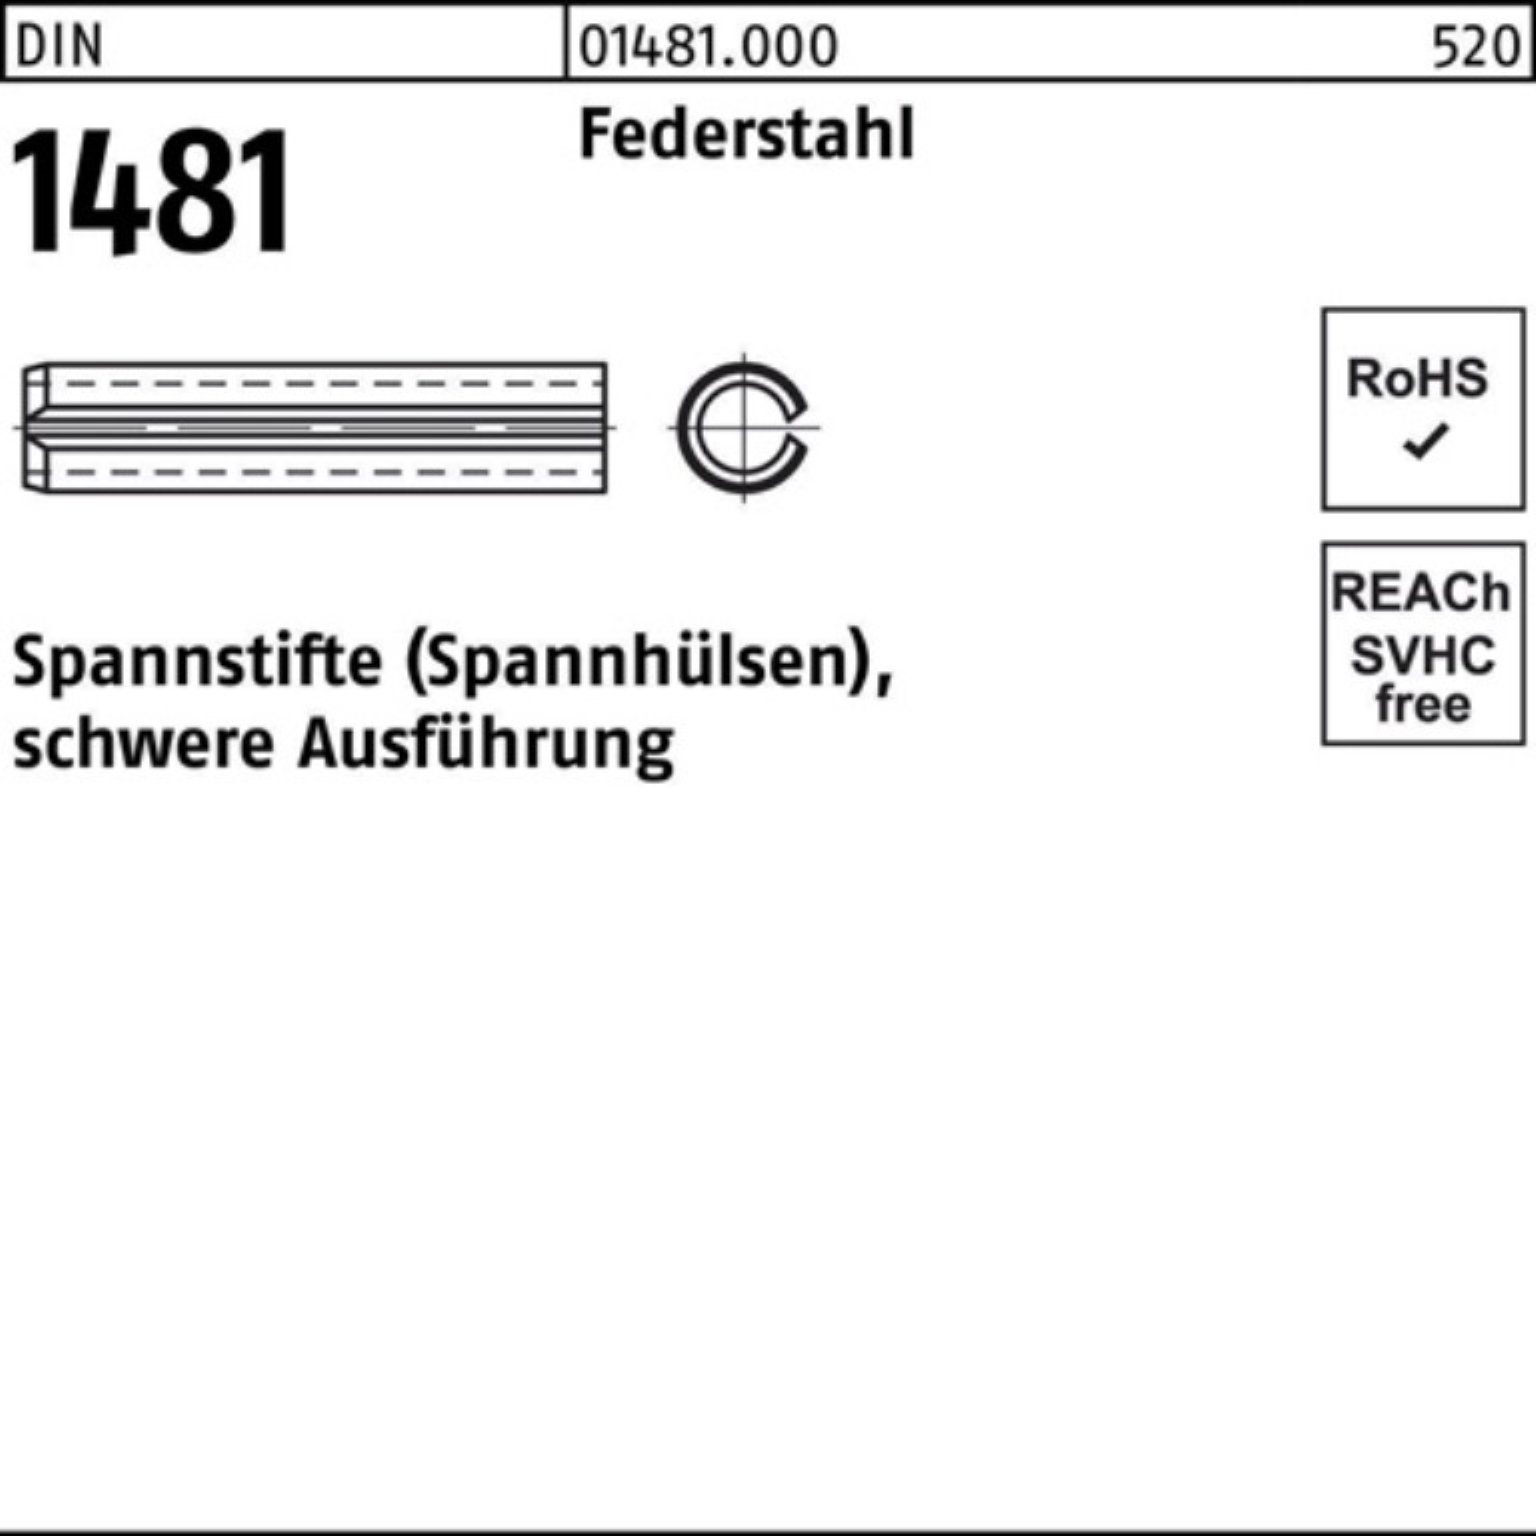 Reyher Spannstift 100er Pack Spannstift 1481 5 Federstahl Ausführung schwere DIN 7x 100